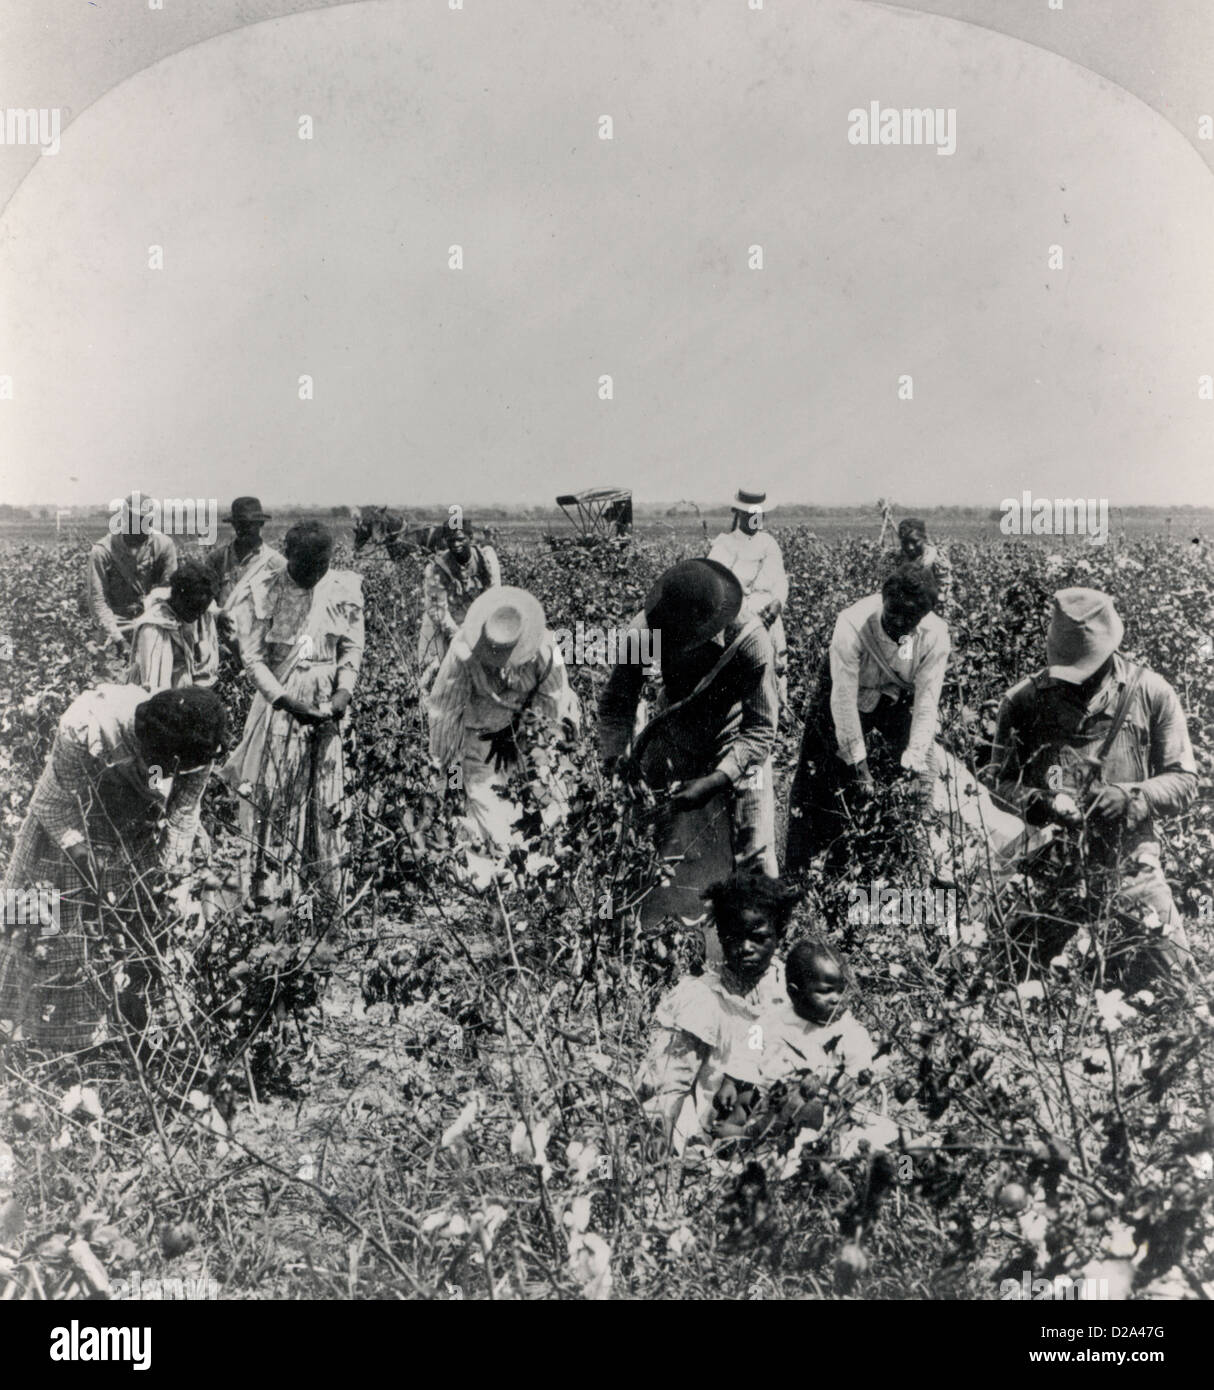 Blacks arbeitet als Pächter auf Plantage nach dem Bürgerkrieg. Stockfoto